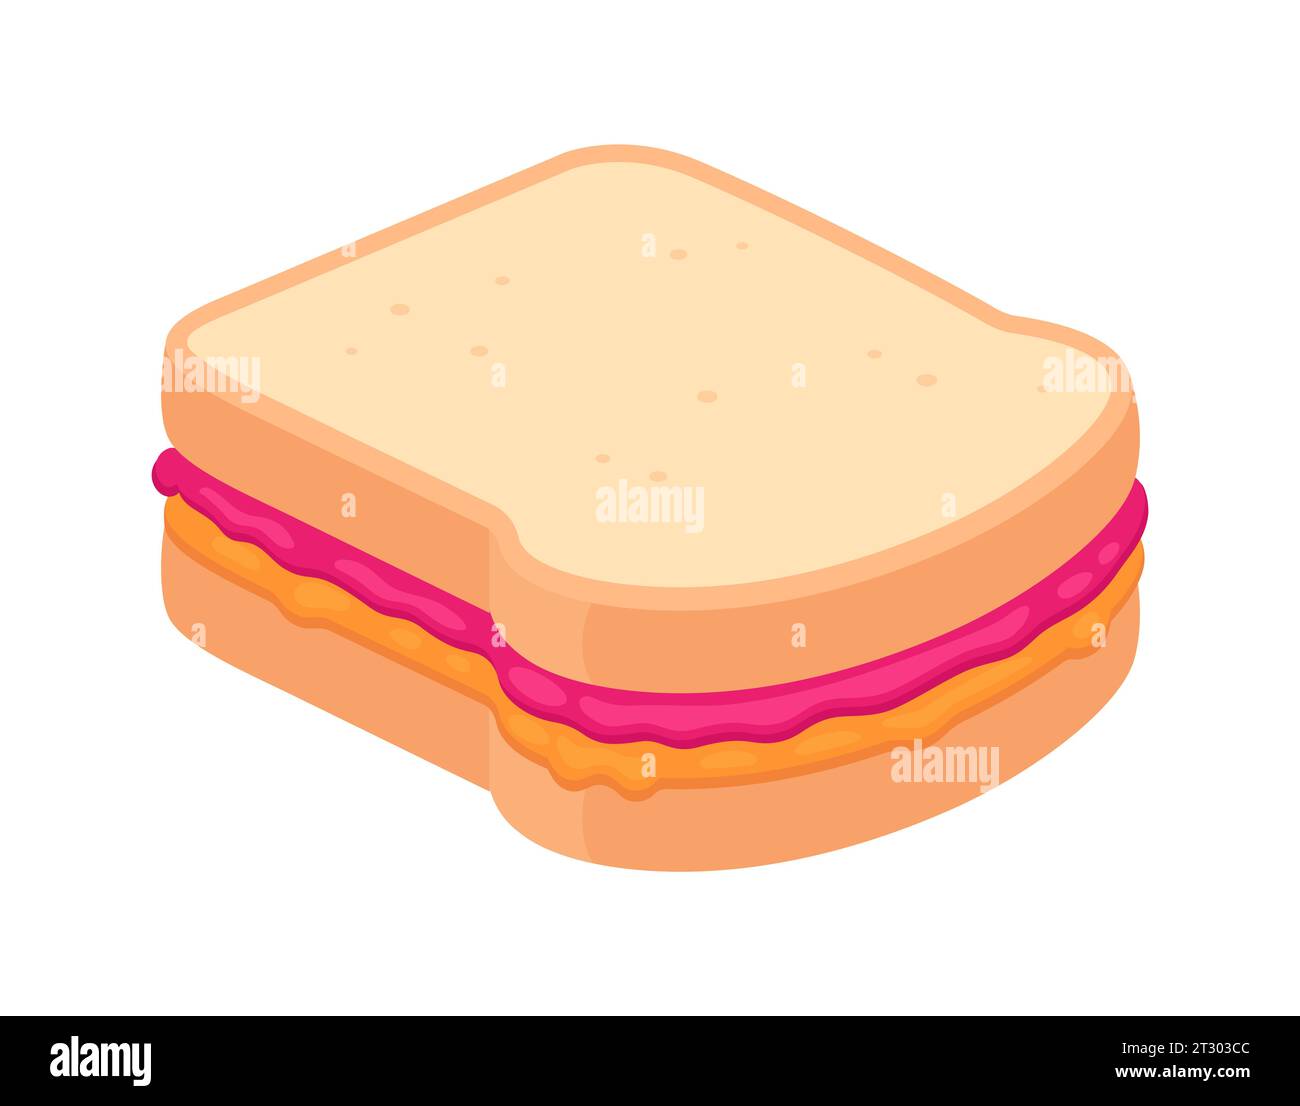 Disegno sandwich PBJ. Pane tostato bianco con burro di arachidi e marmellata di lamponi. Illustrazione del cartone animato con disegno vettoriale piatto. Illustrazione Vettoriale